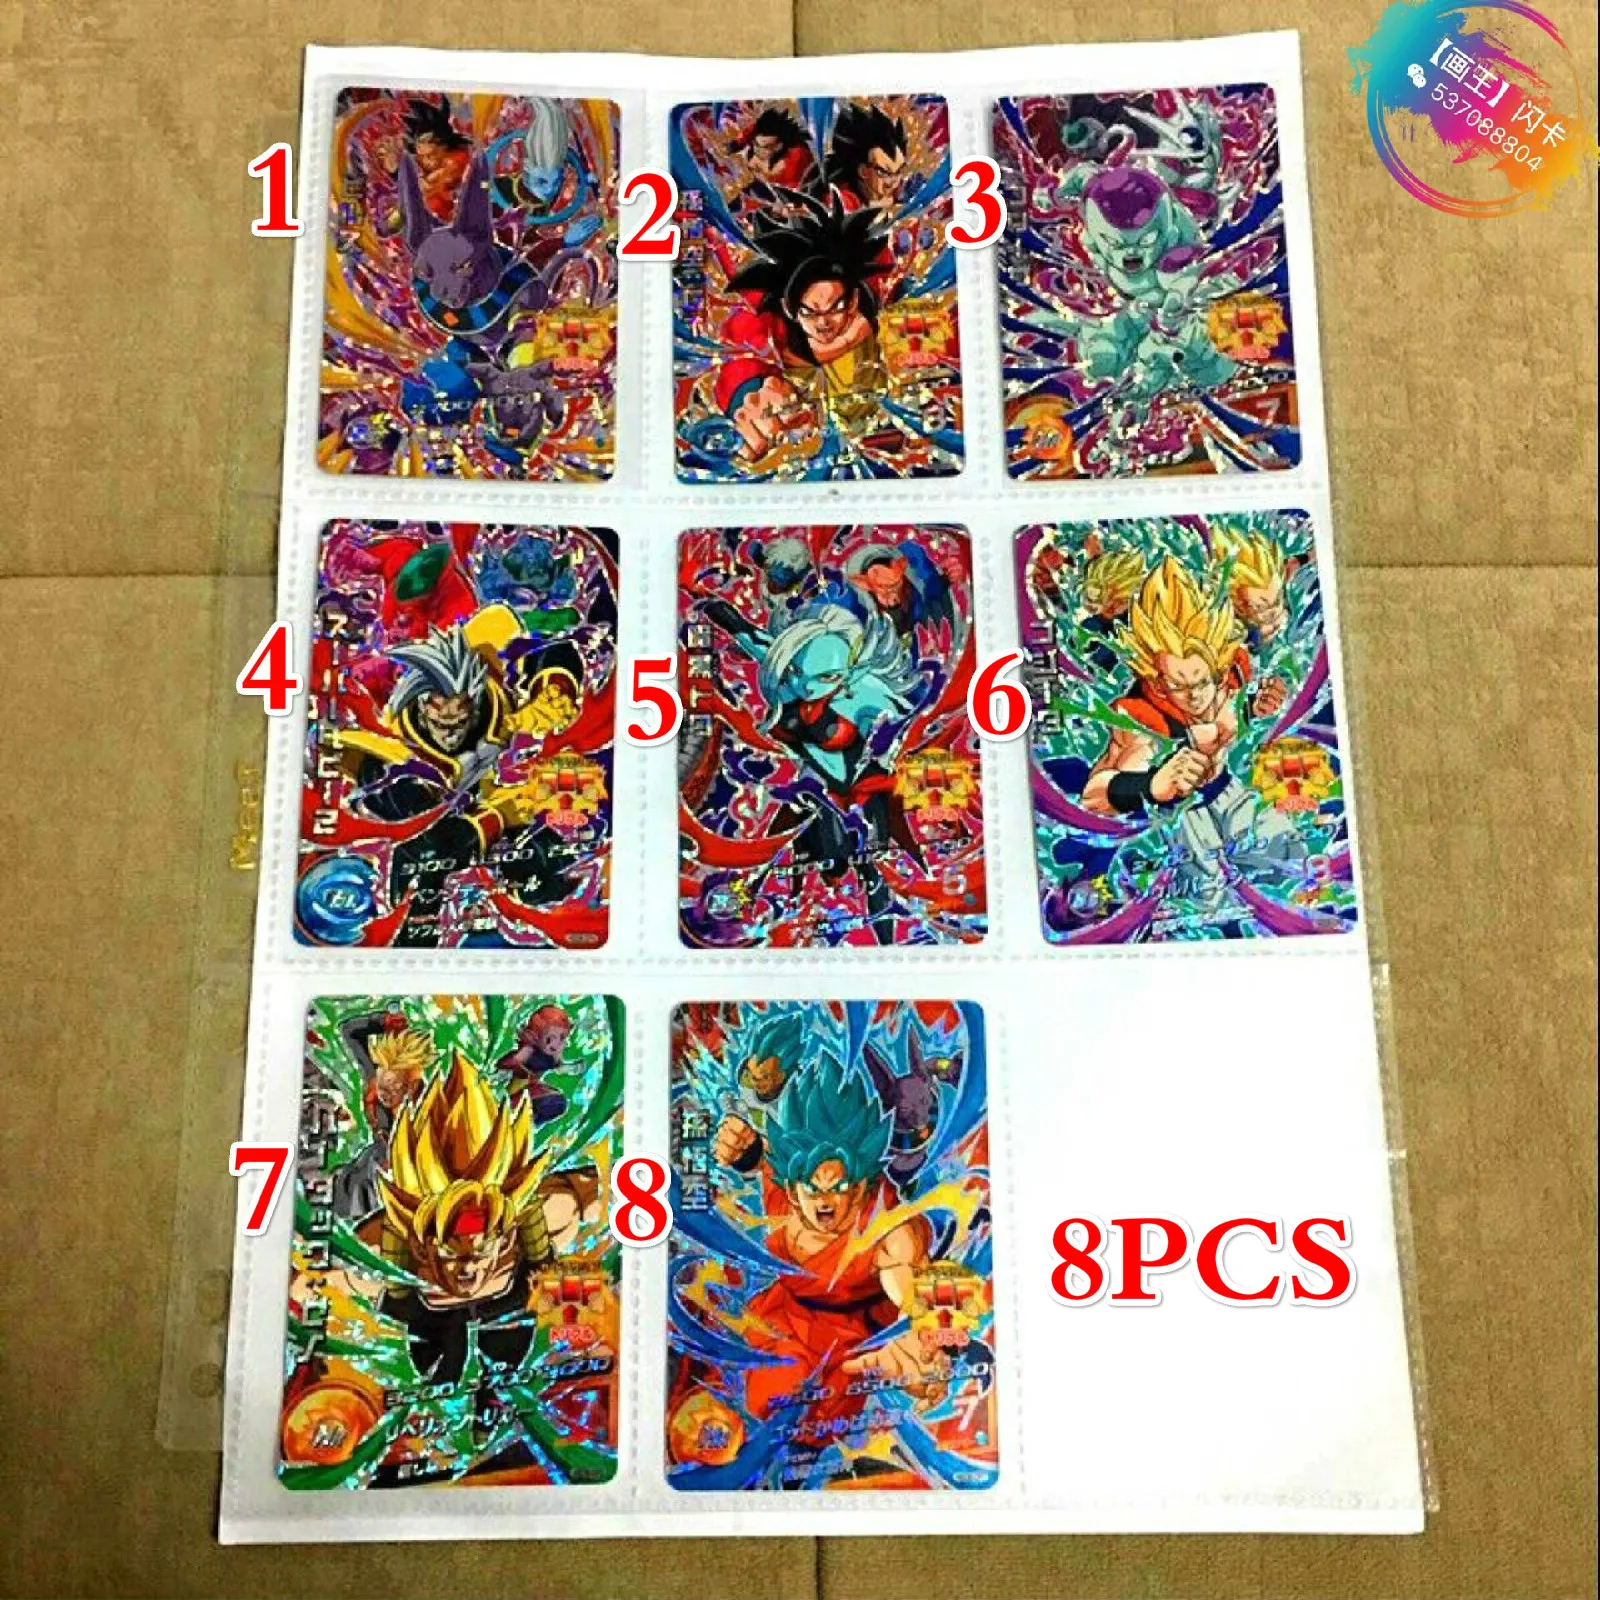 Япония Dragon Ball Hero Card HGD6 Gogeta Бог, супер сайян игрушки Goku Хобби Коллекционные игры Коллекция аниме-открытки - Цвет: 8PCS